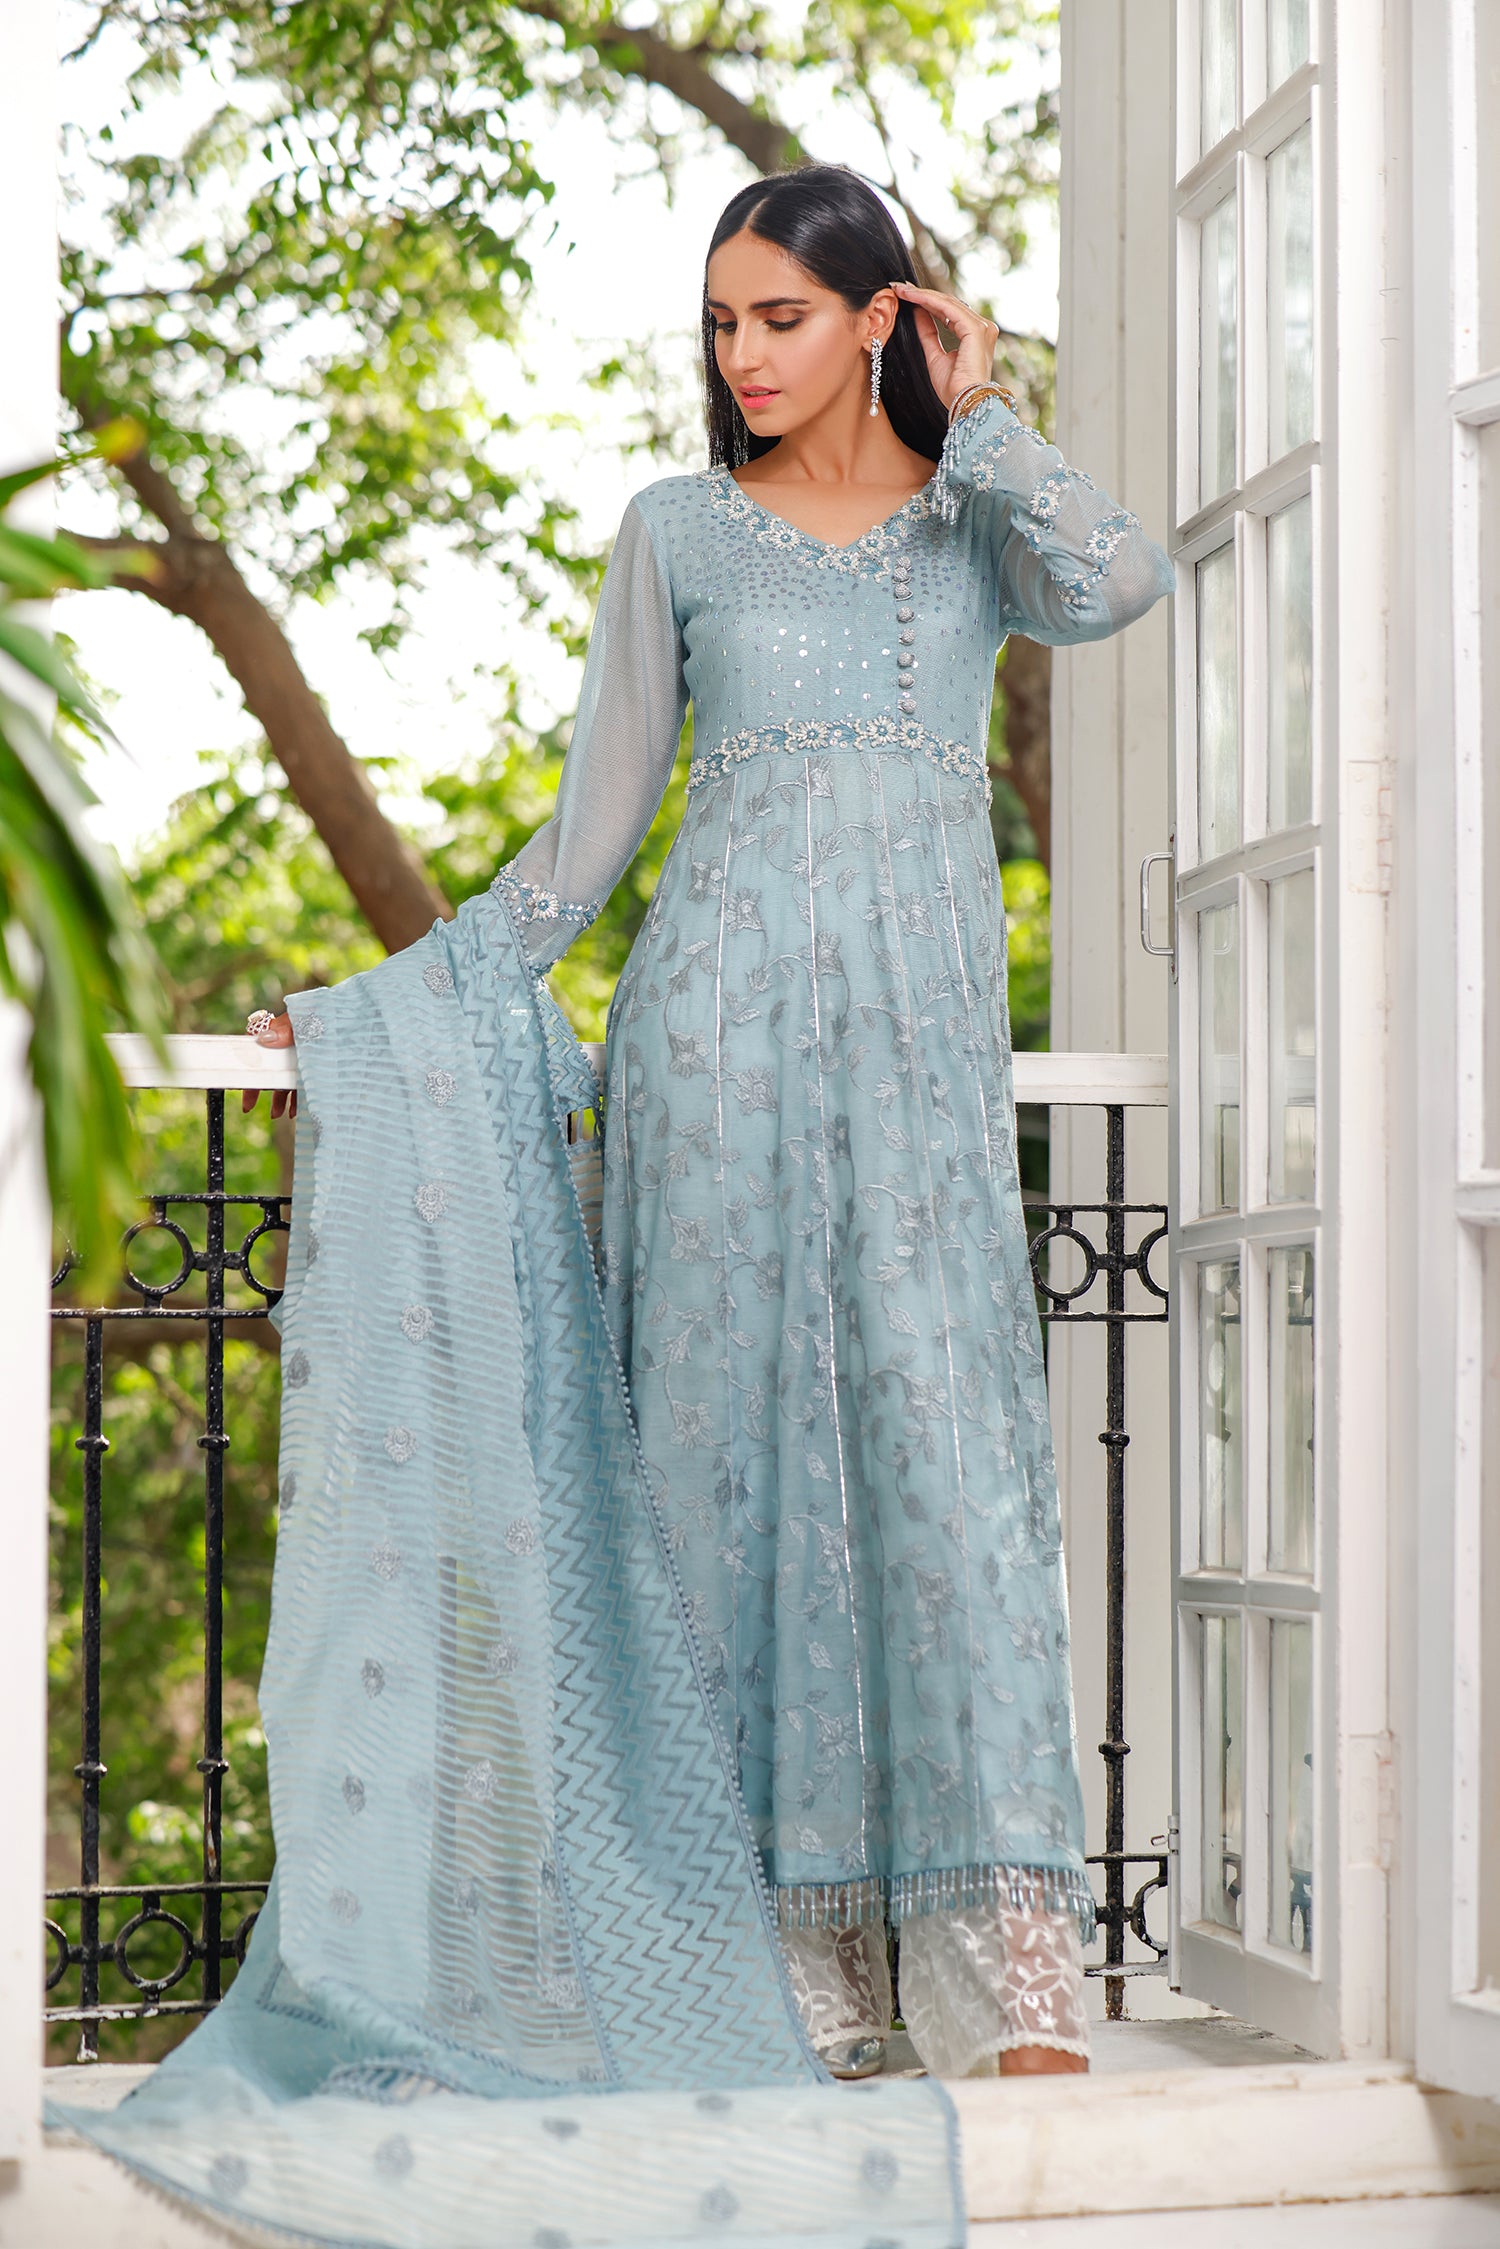 Falak Tara - A Beautiful Dress Collection